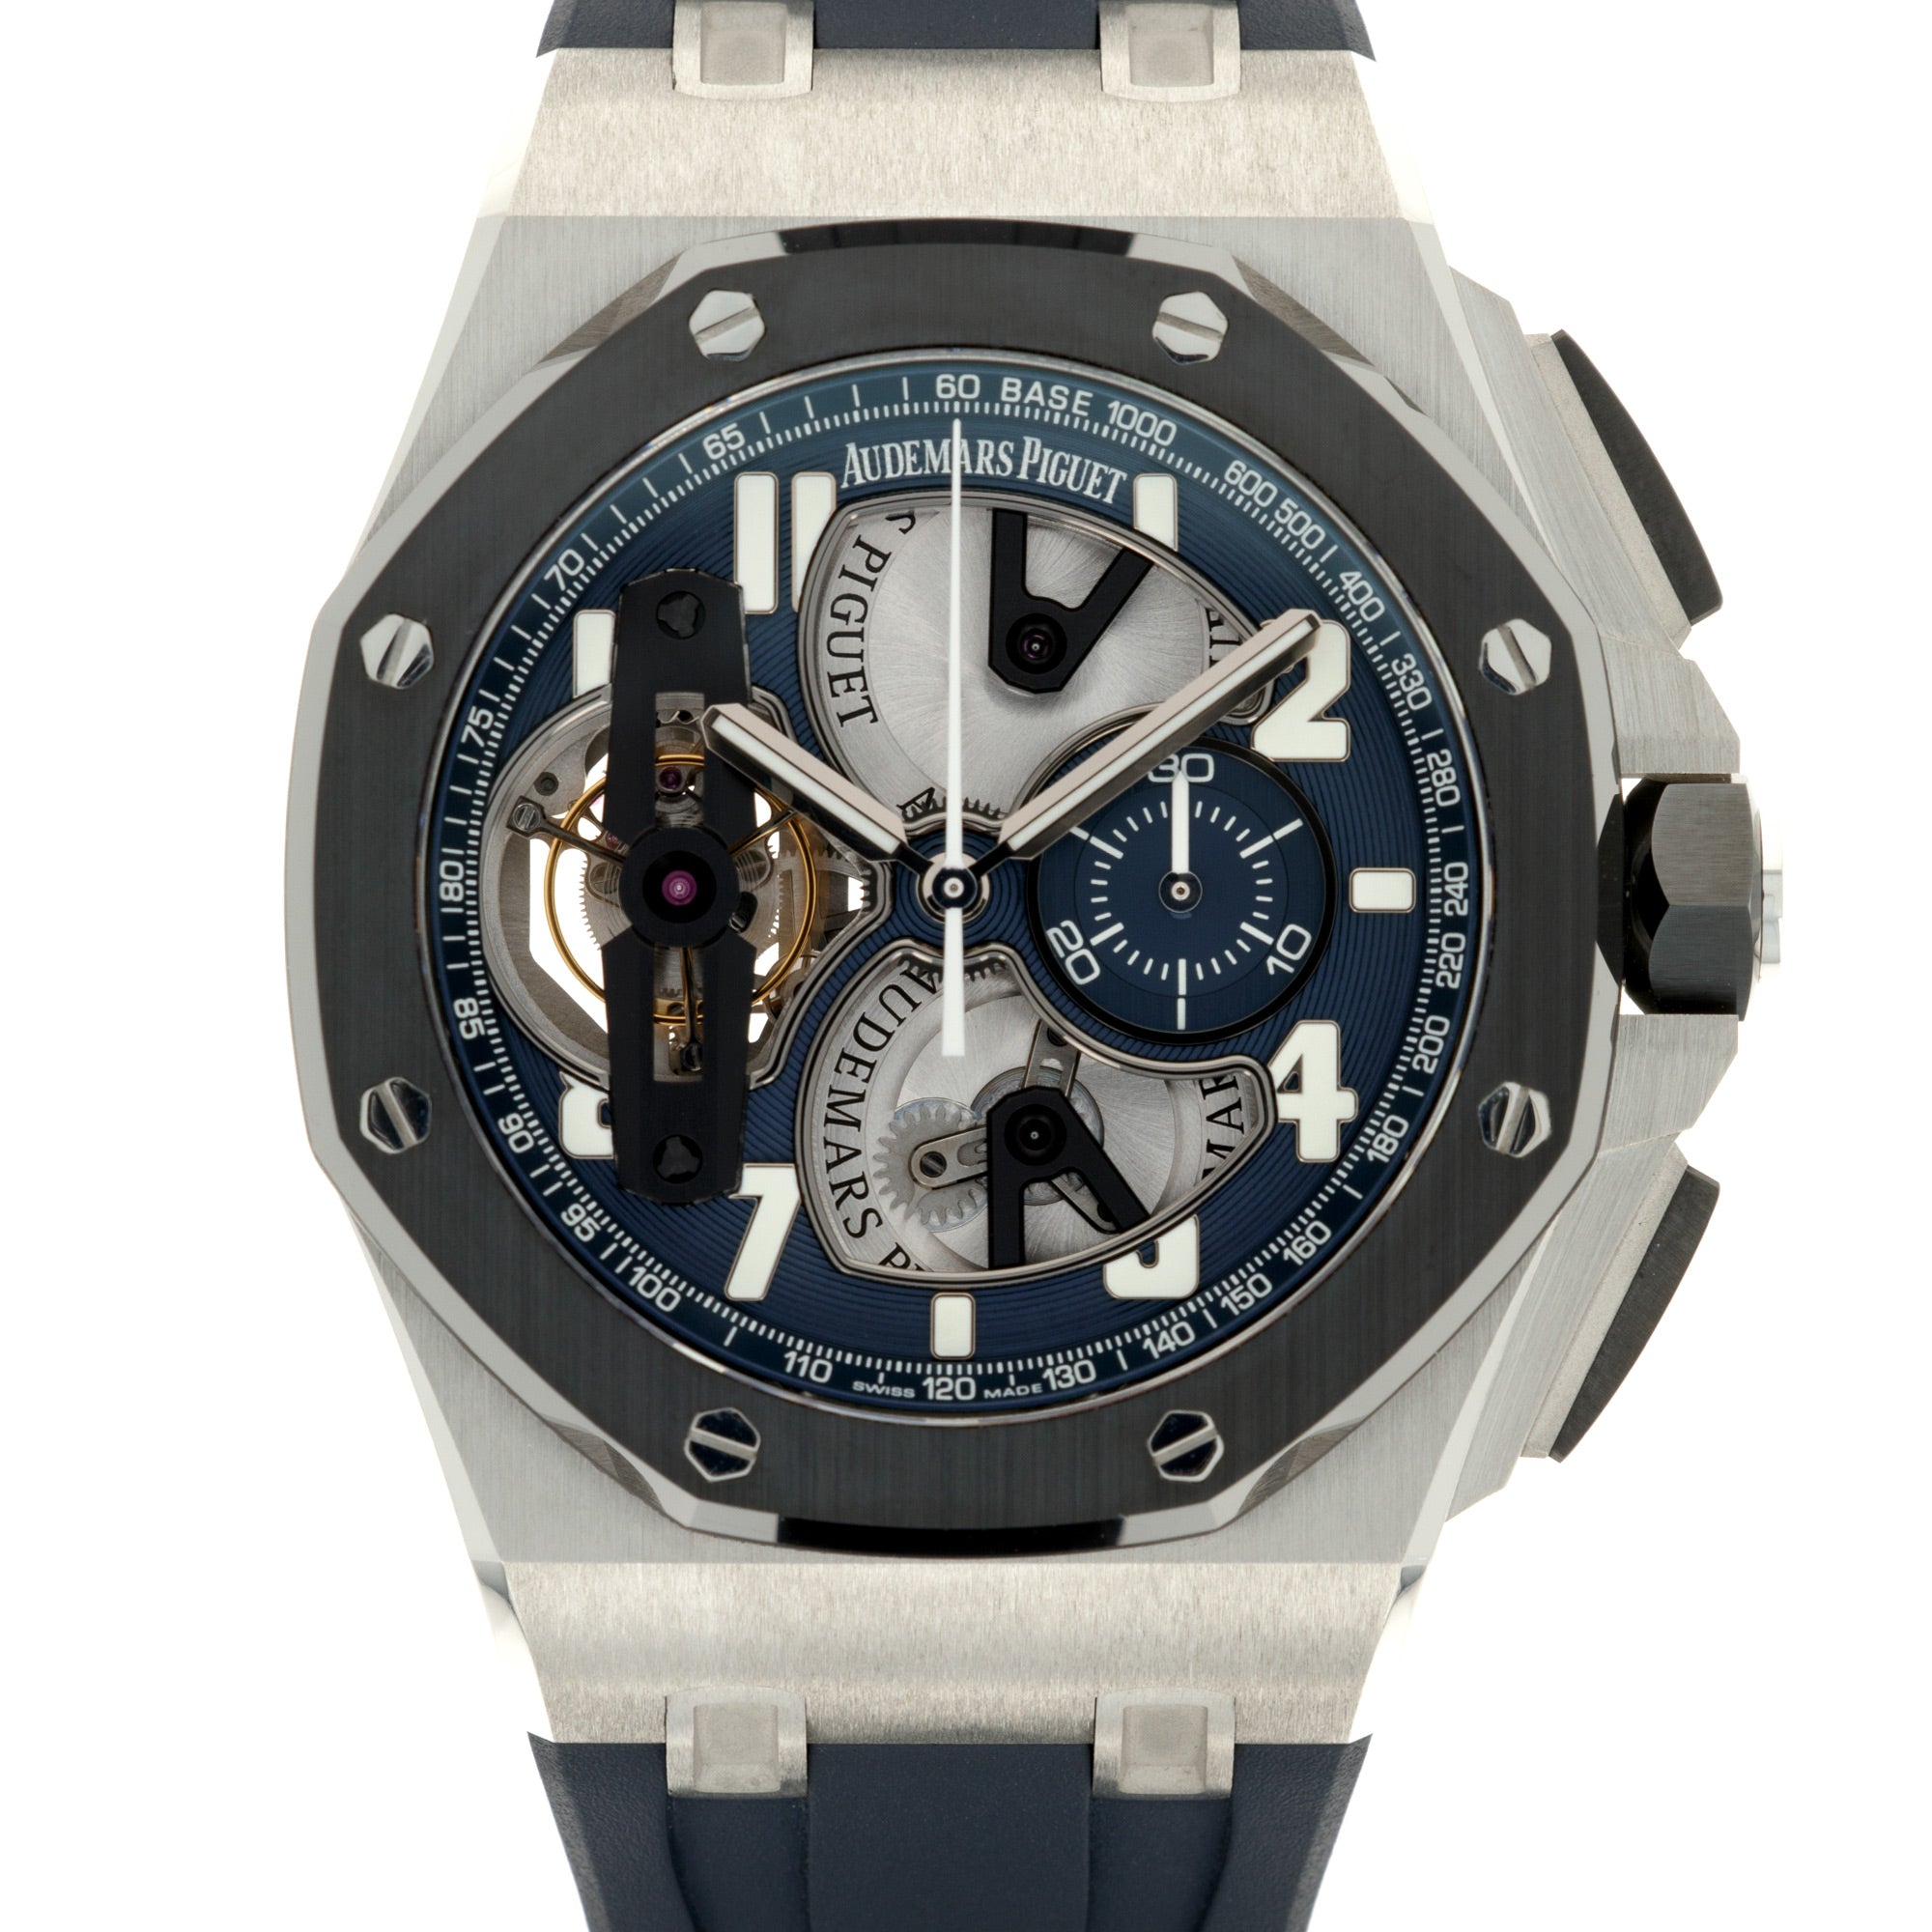 Audemars Piguet - Audemars Piguet Platinum Royal Oak Tourbillon Watch Ref. 26388 - The Keystone Watches